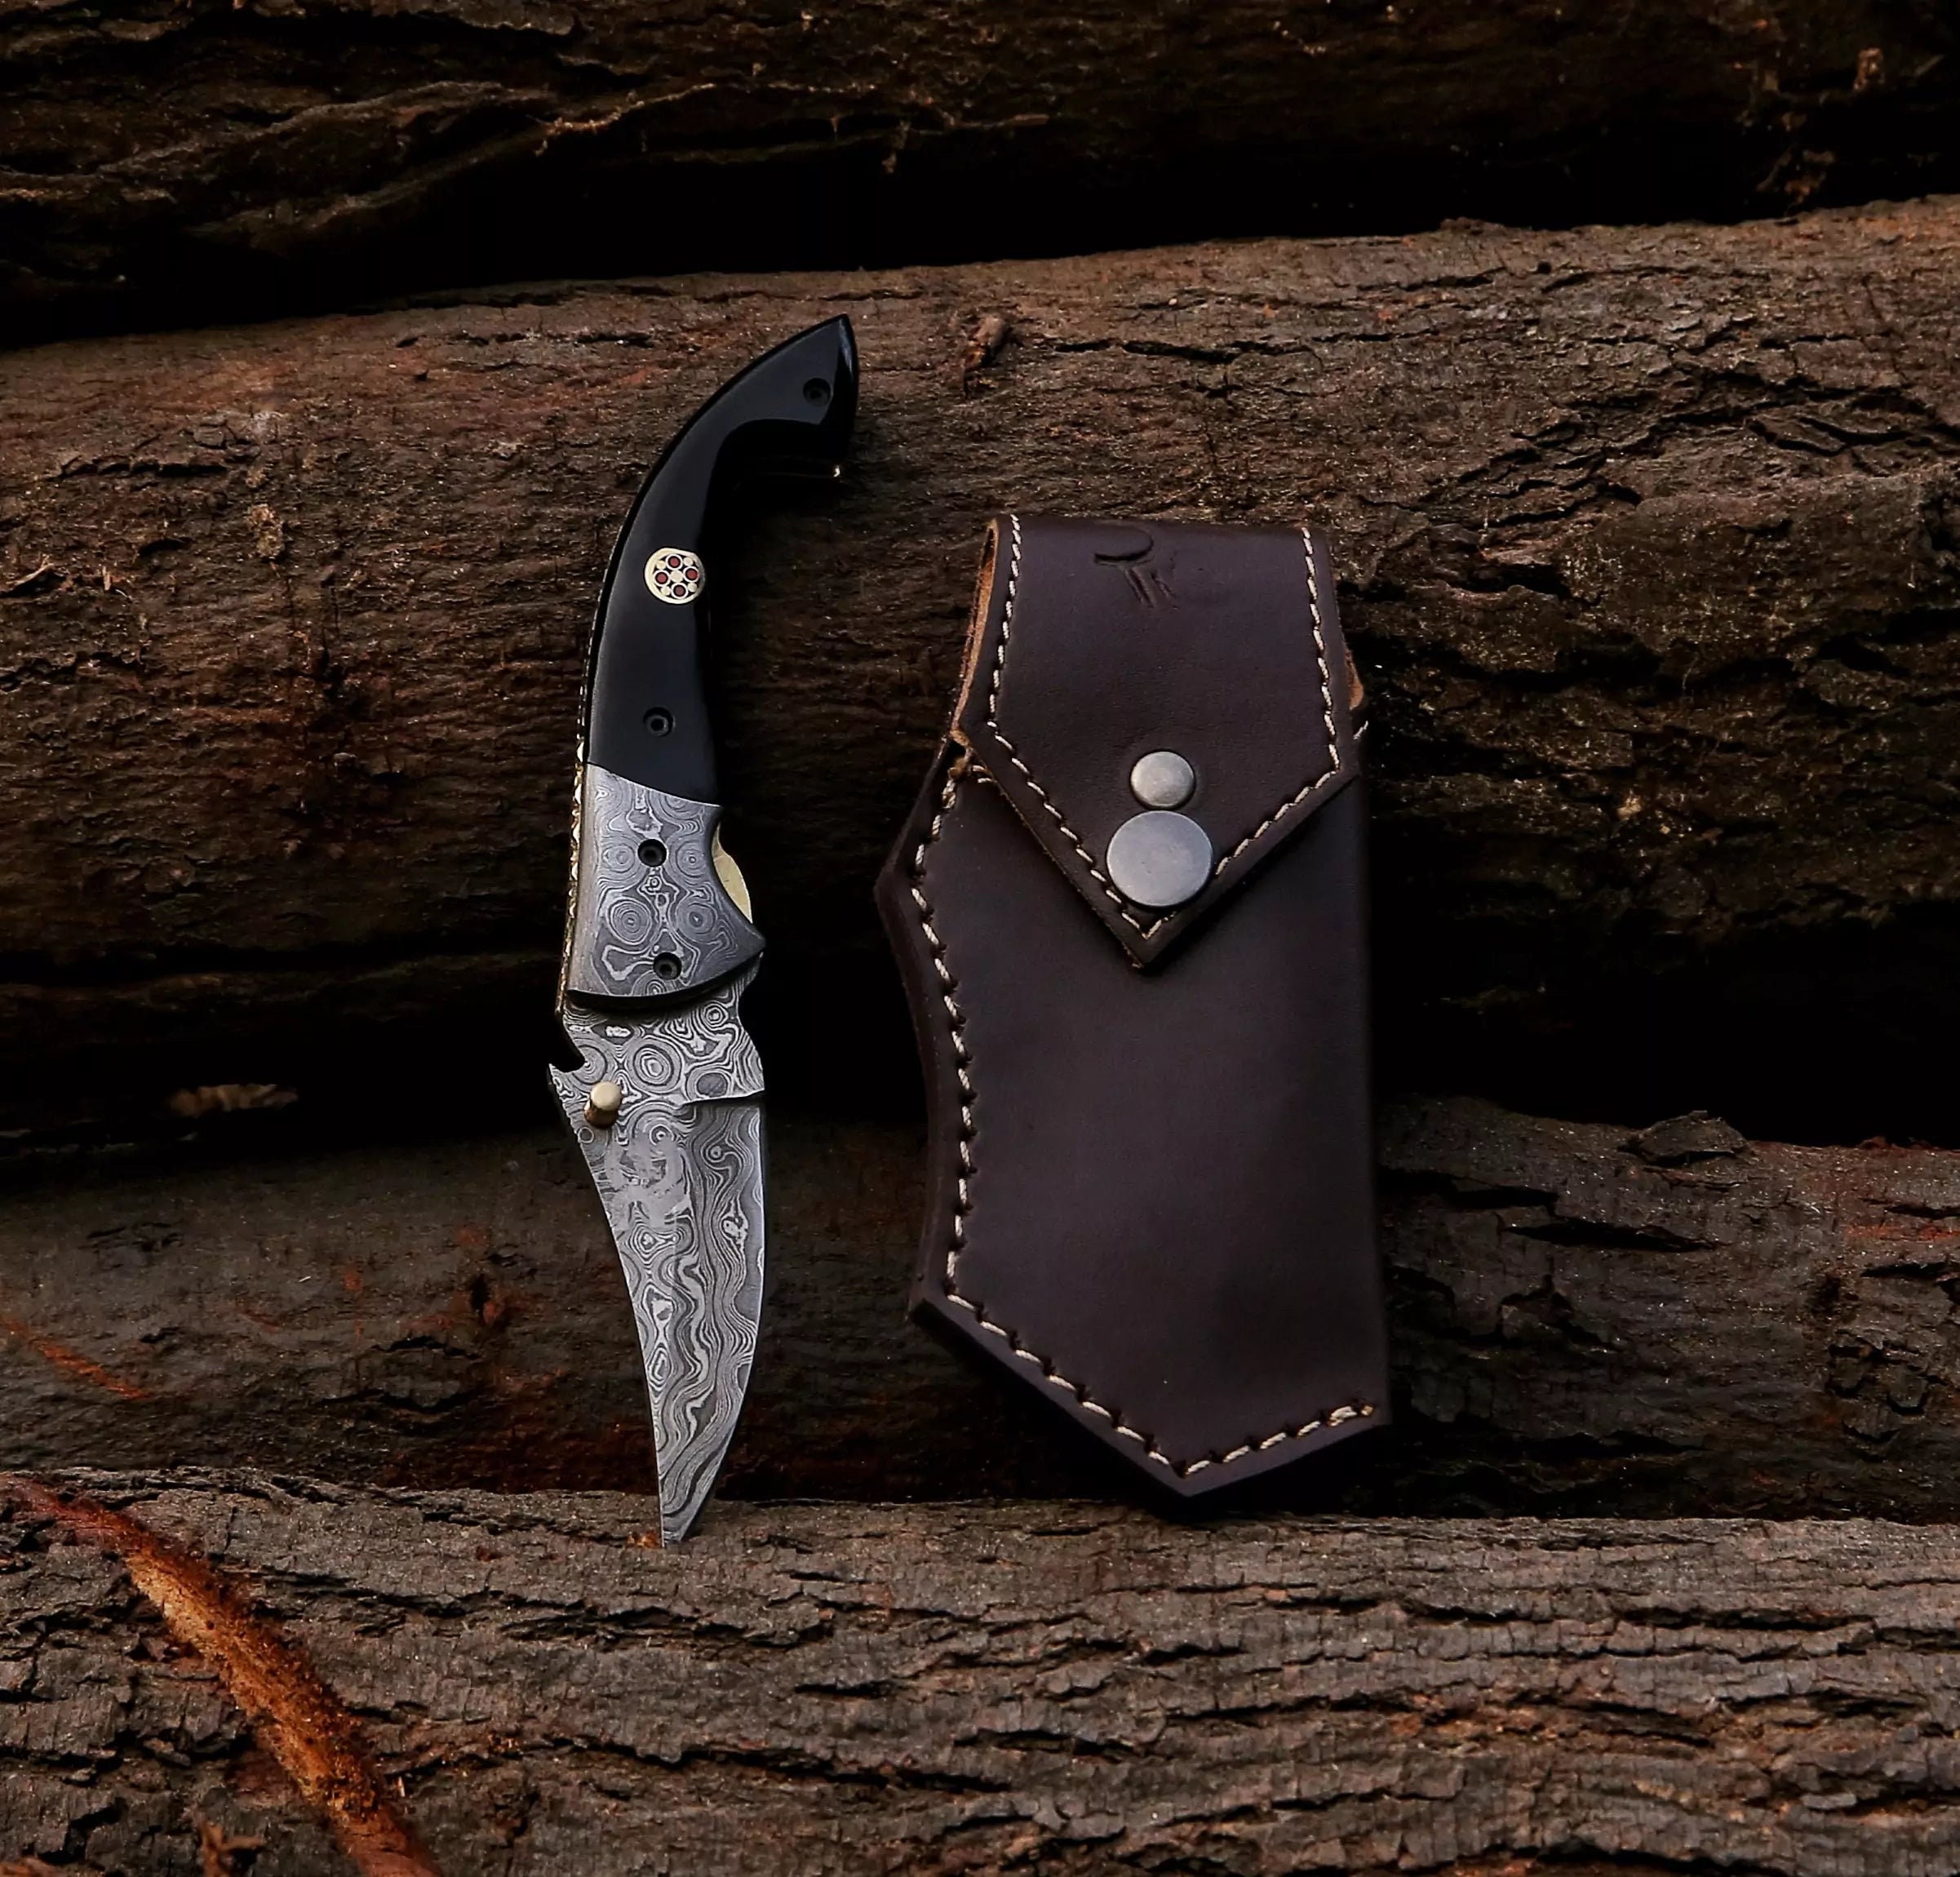 Damascus Knife Making Kit - Predator - (9 Handle Options) - DIY Blade Kit